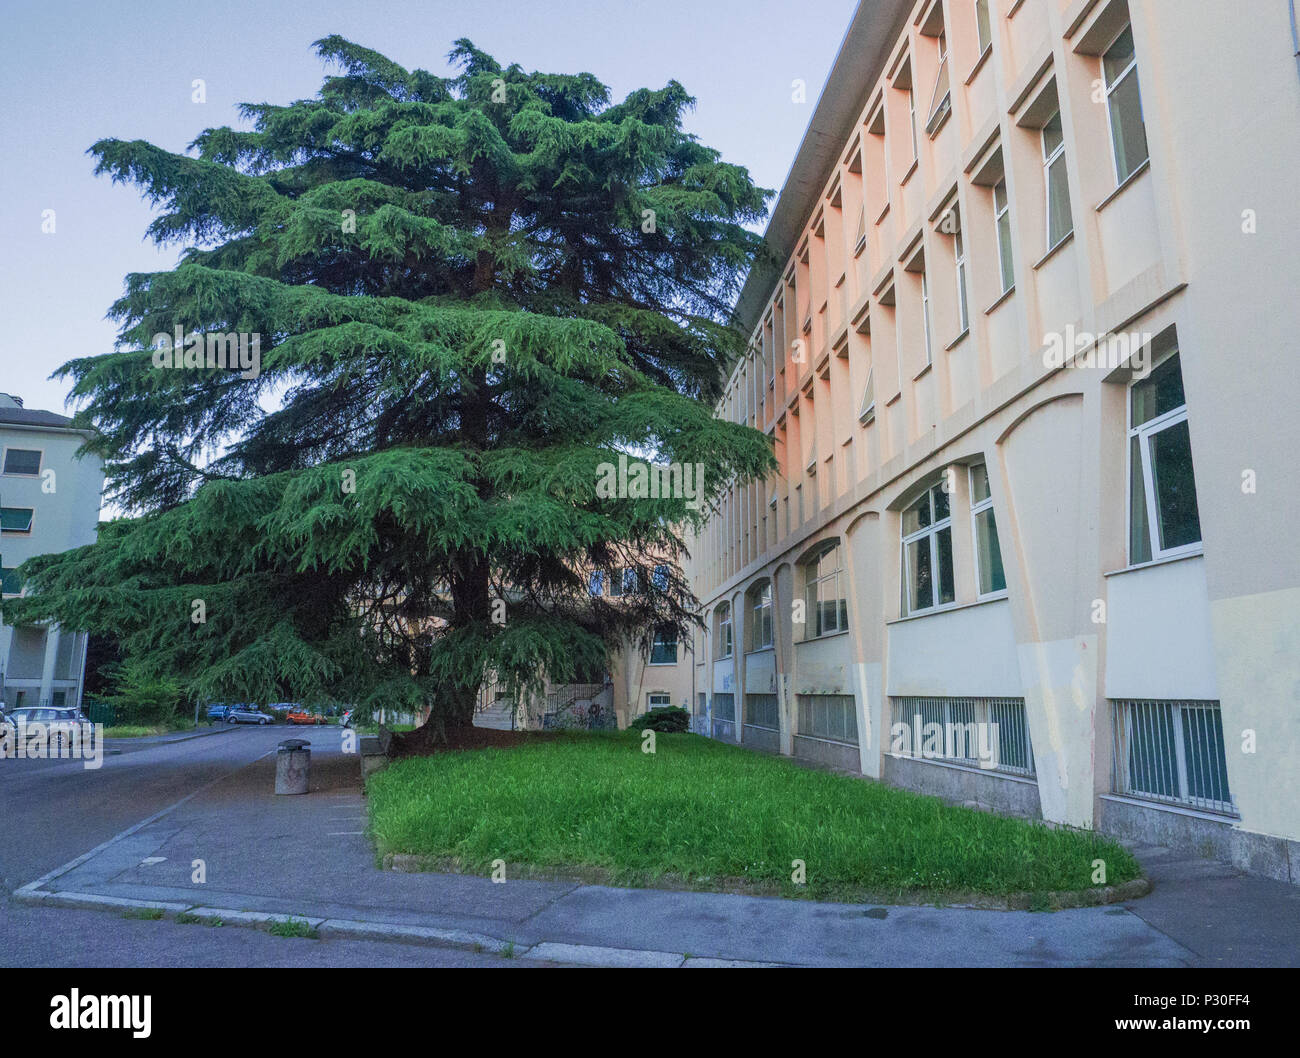 Magnifique arbre monumental à l'entrée d'une école secondaire en Lombardie, Italie Banque D'Images